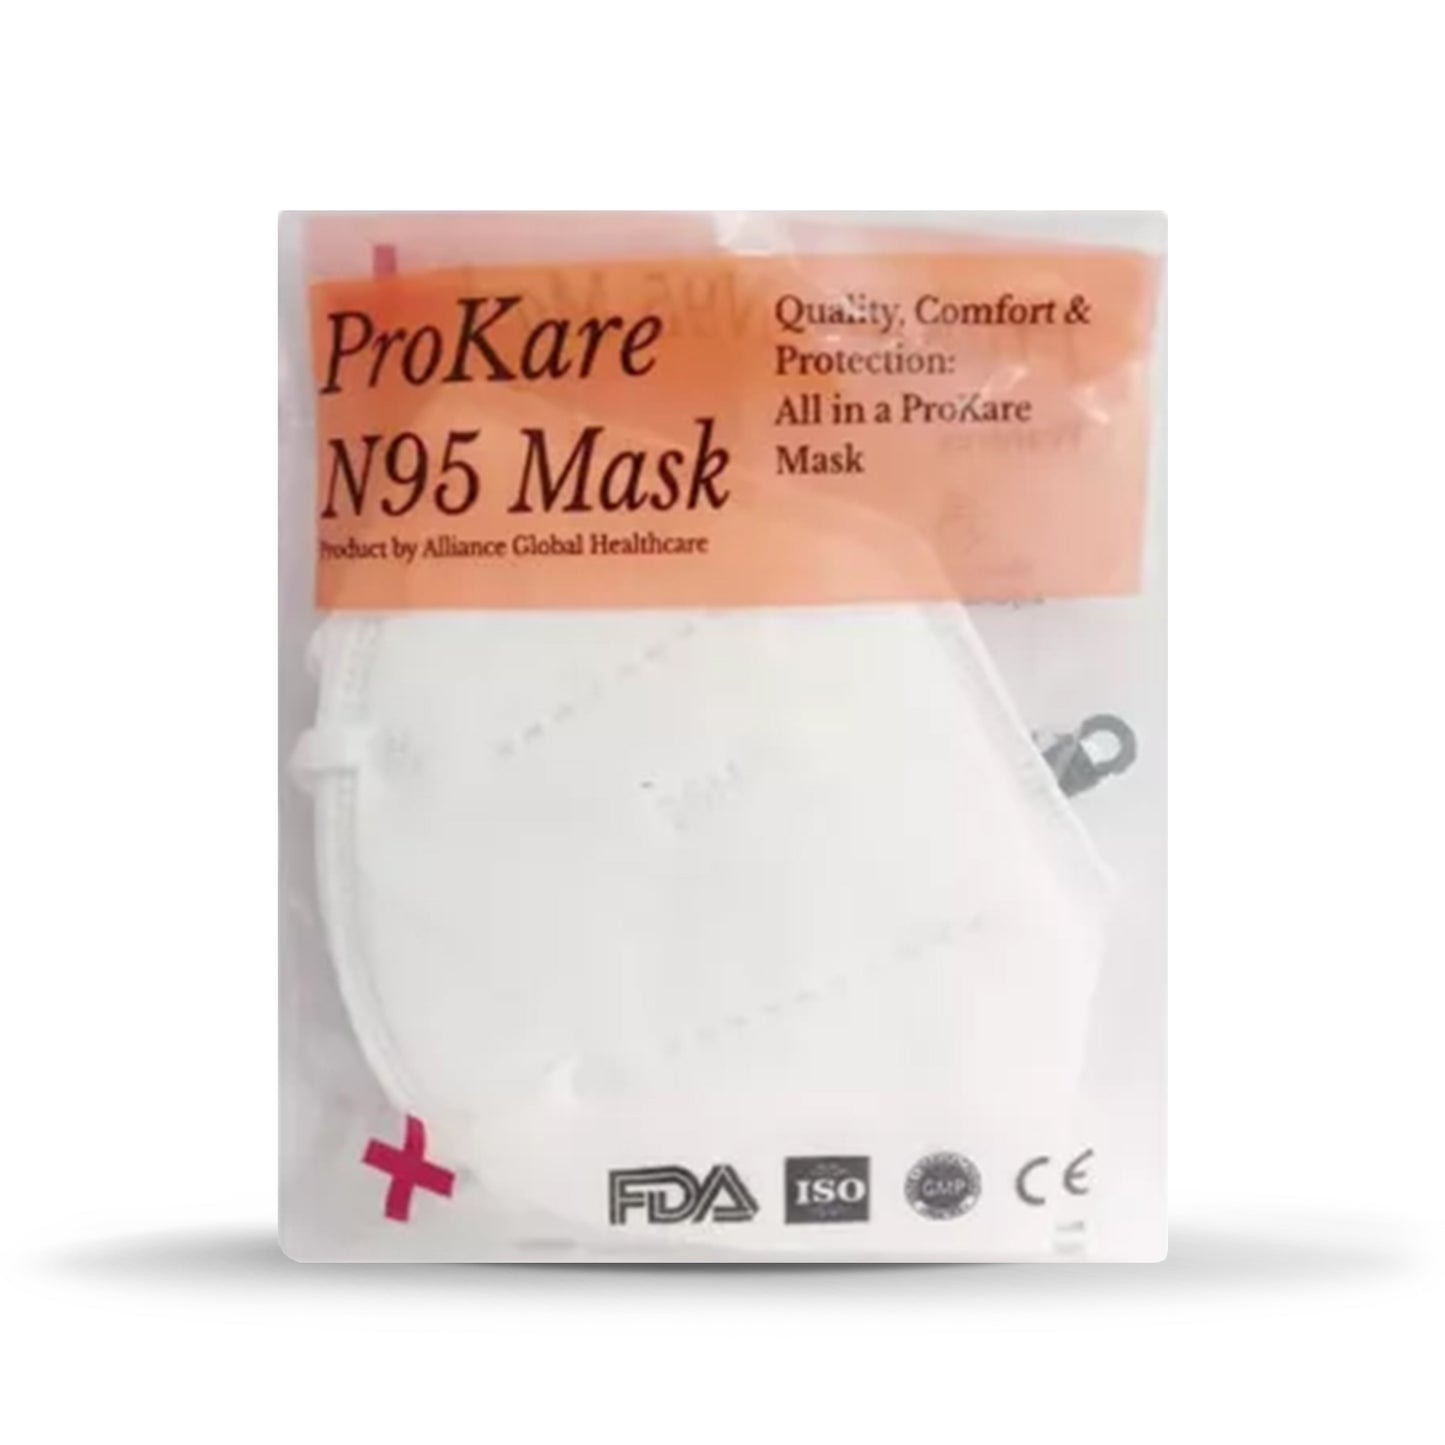 ProKare N95 - 耳挂式 5 层防护面罩